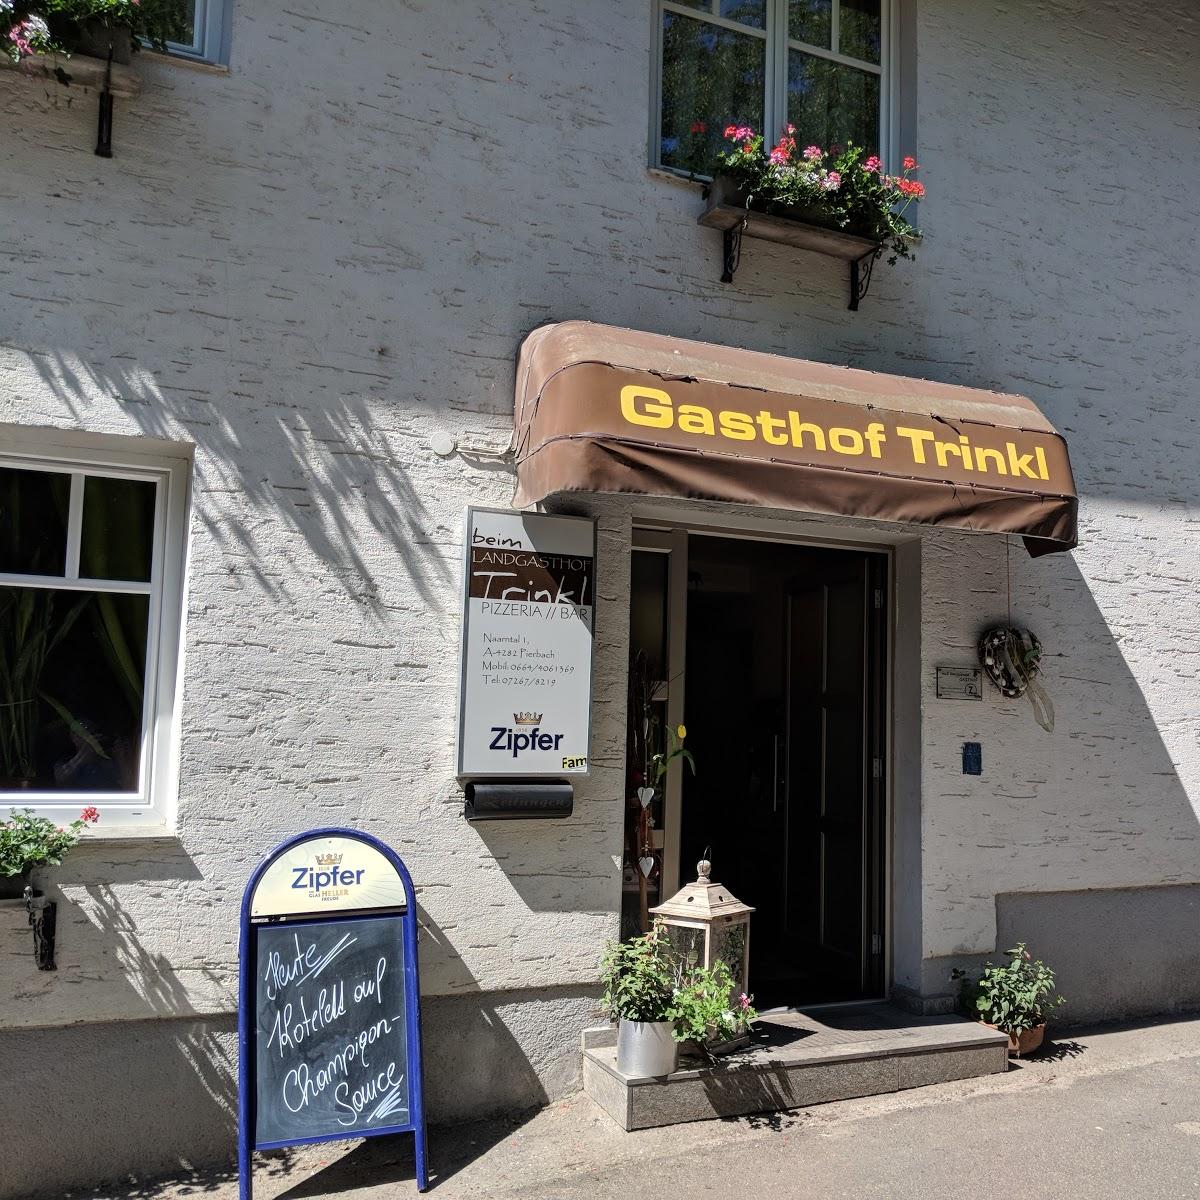 Restaurant "Gasthof Günther Trinkl" in Pierbach